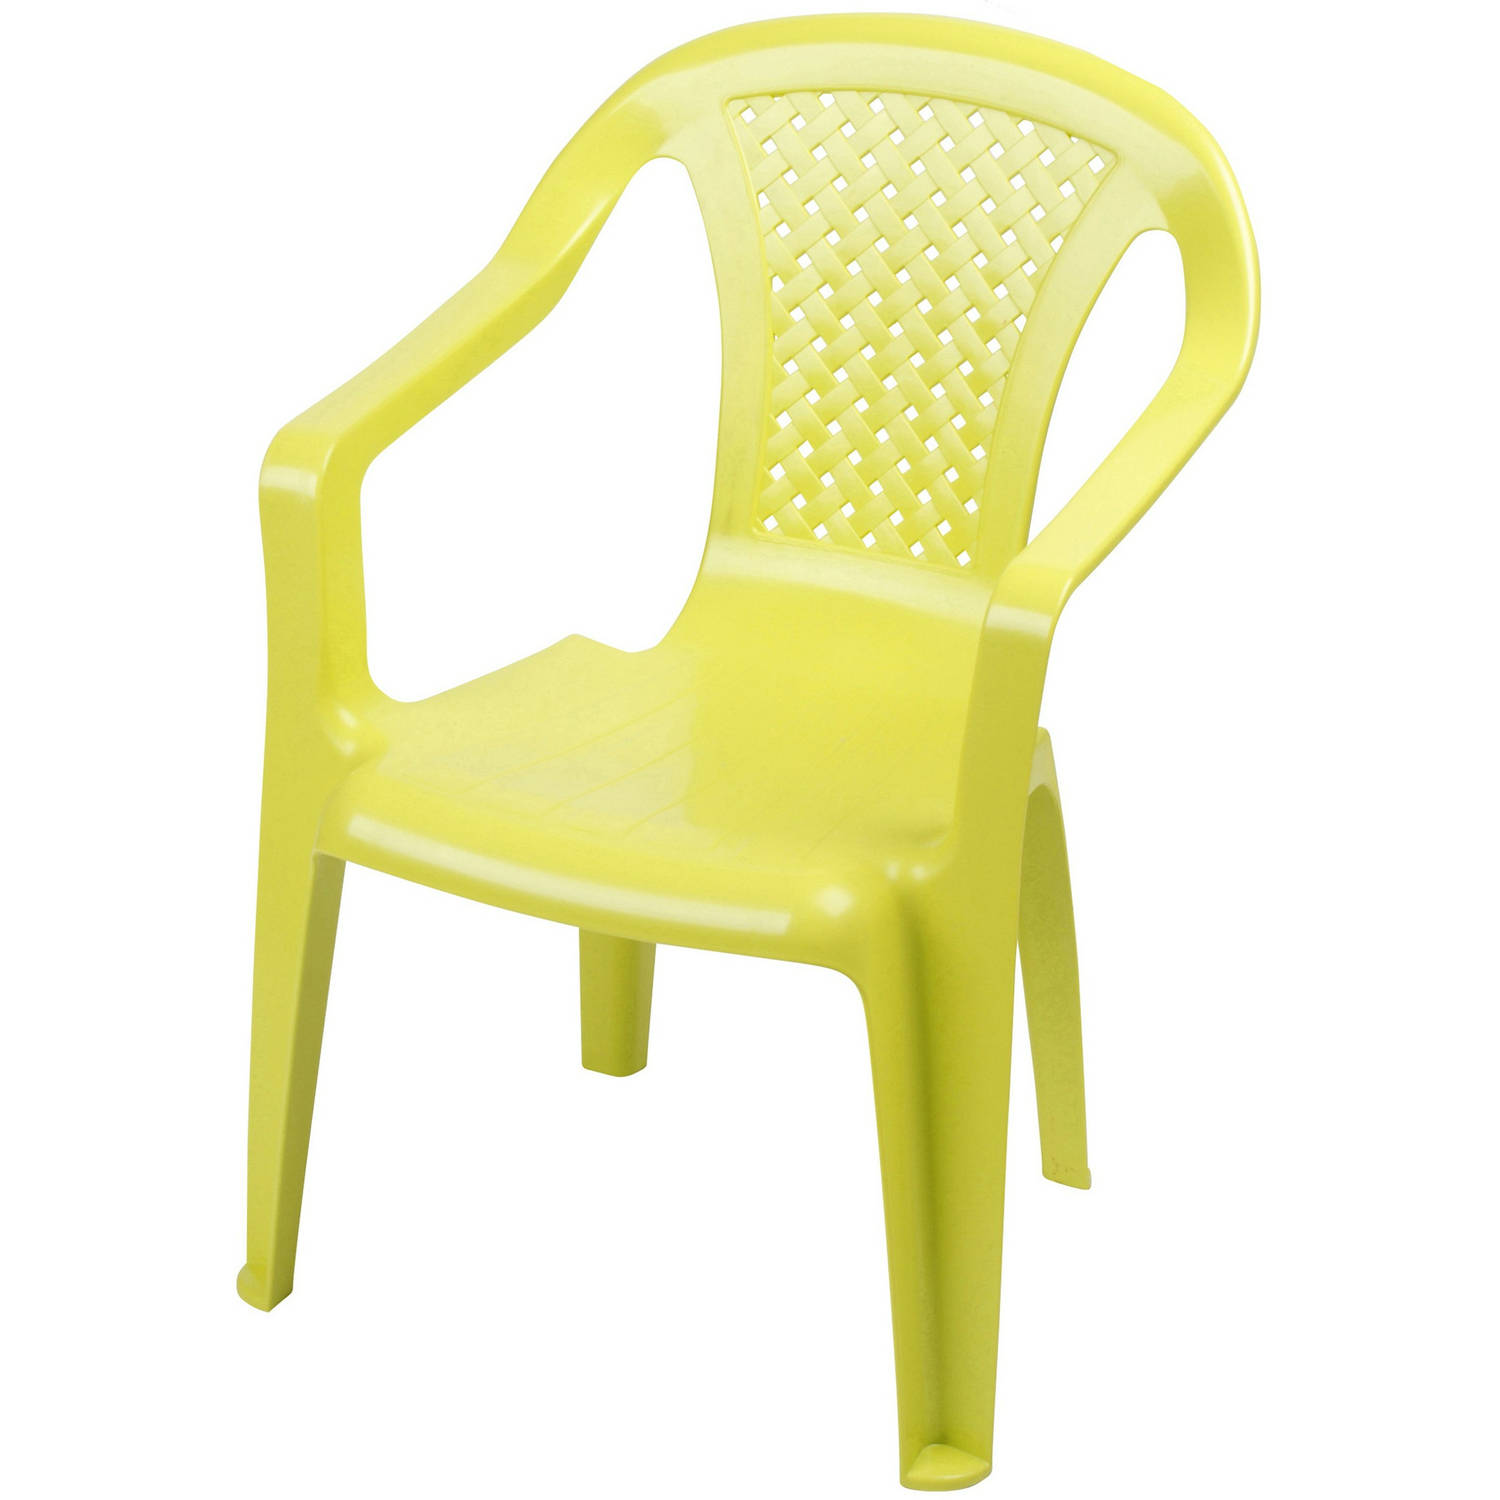 Sunnydays Kinderstoel - groen - kunststof - buiten/binnen - L37 x B35 x H52 cm - tuinstoelen